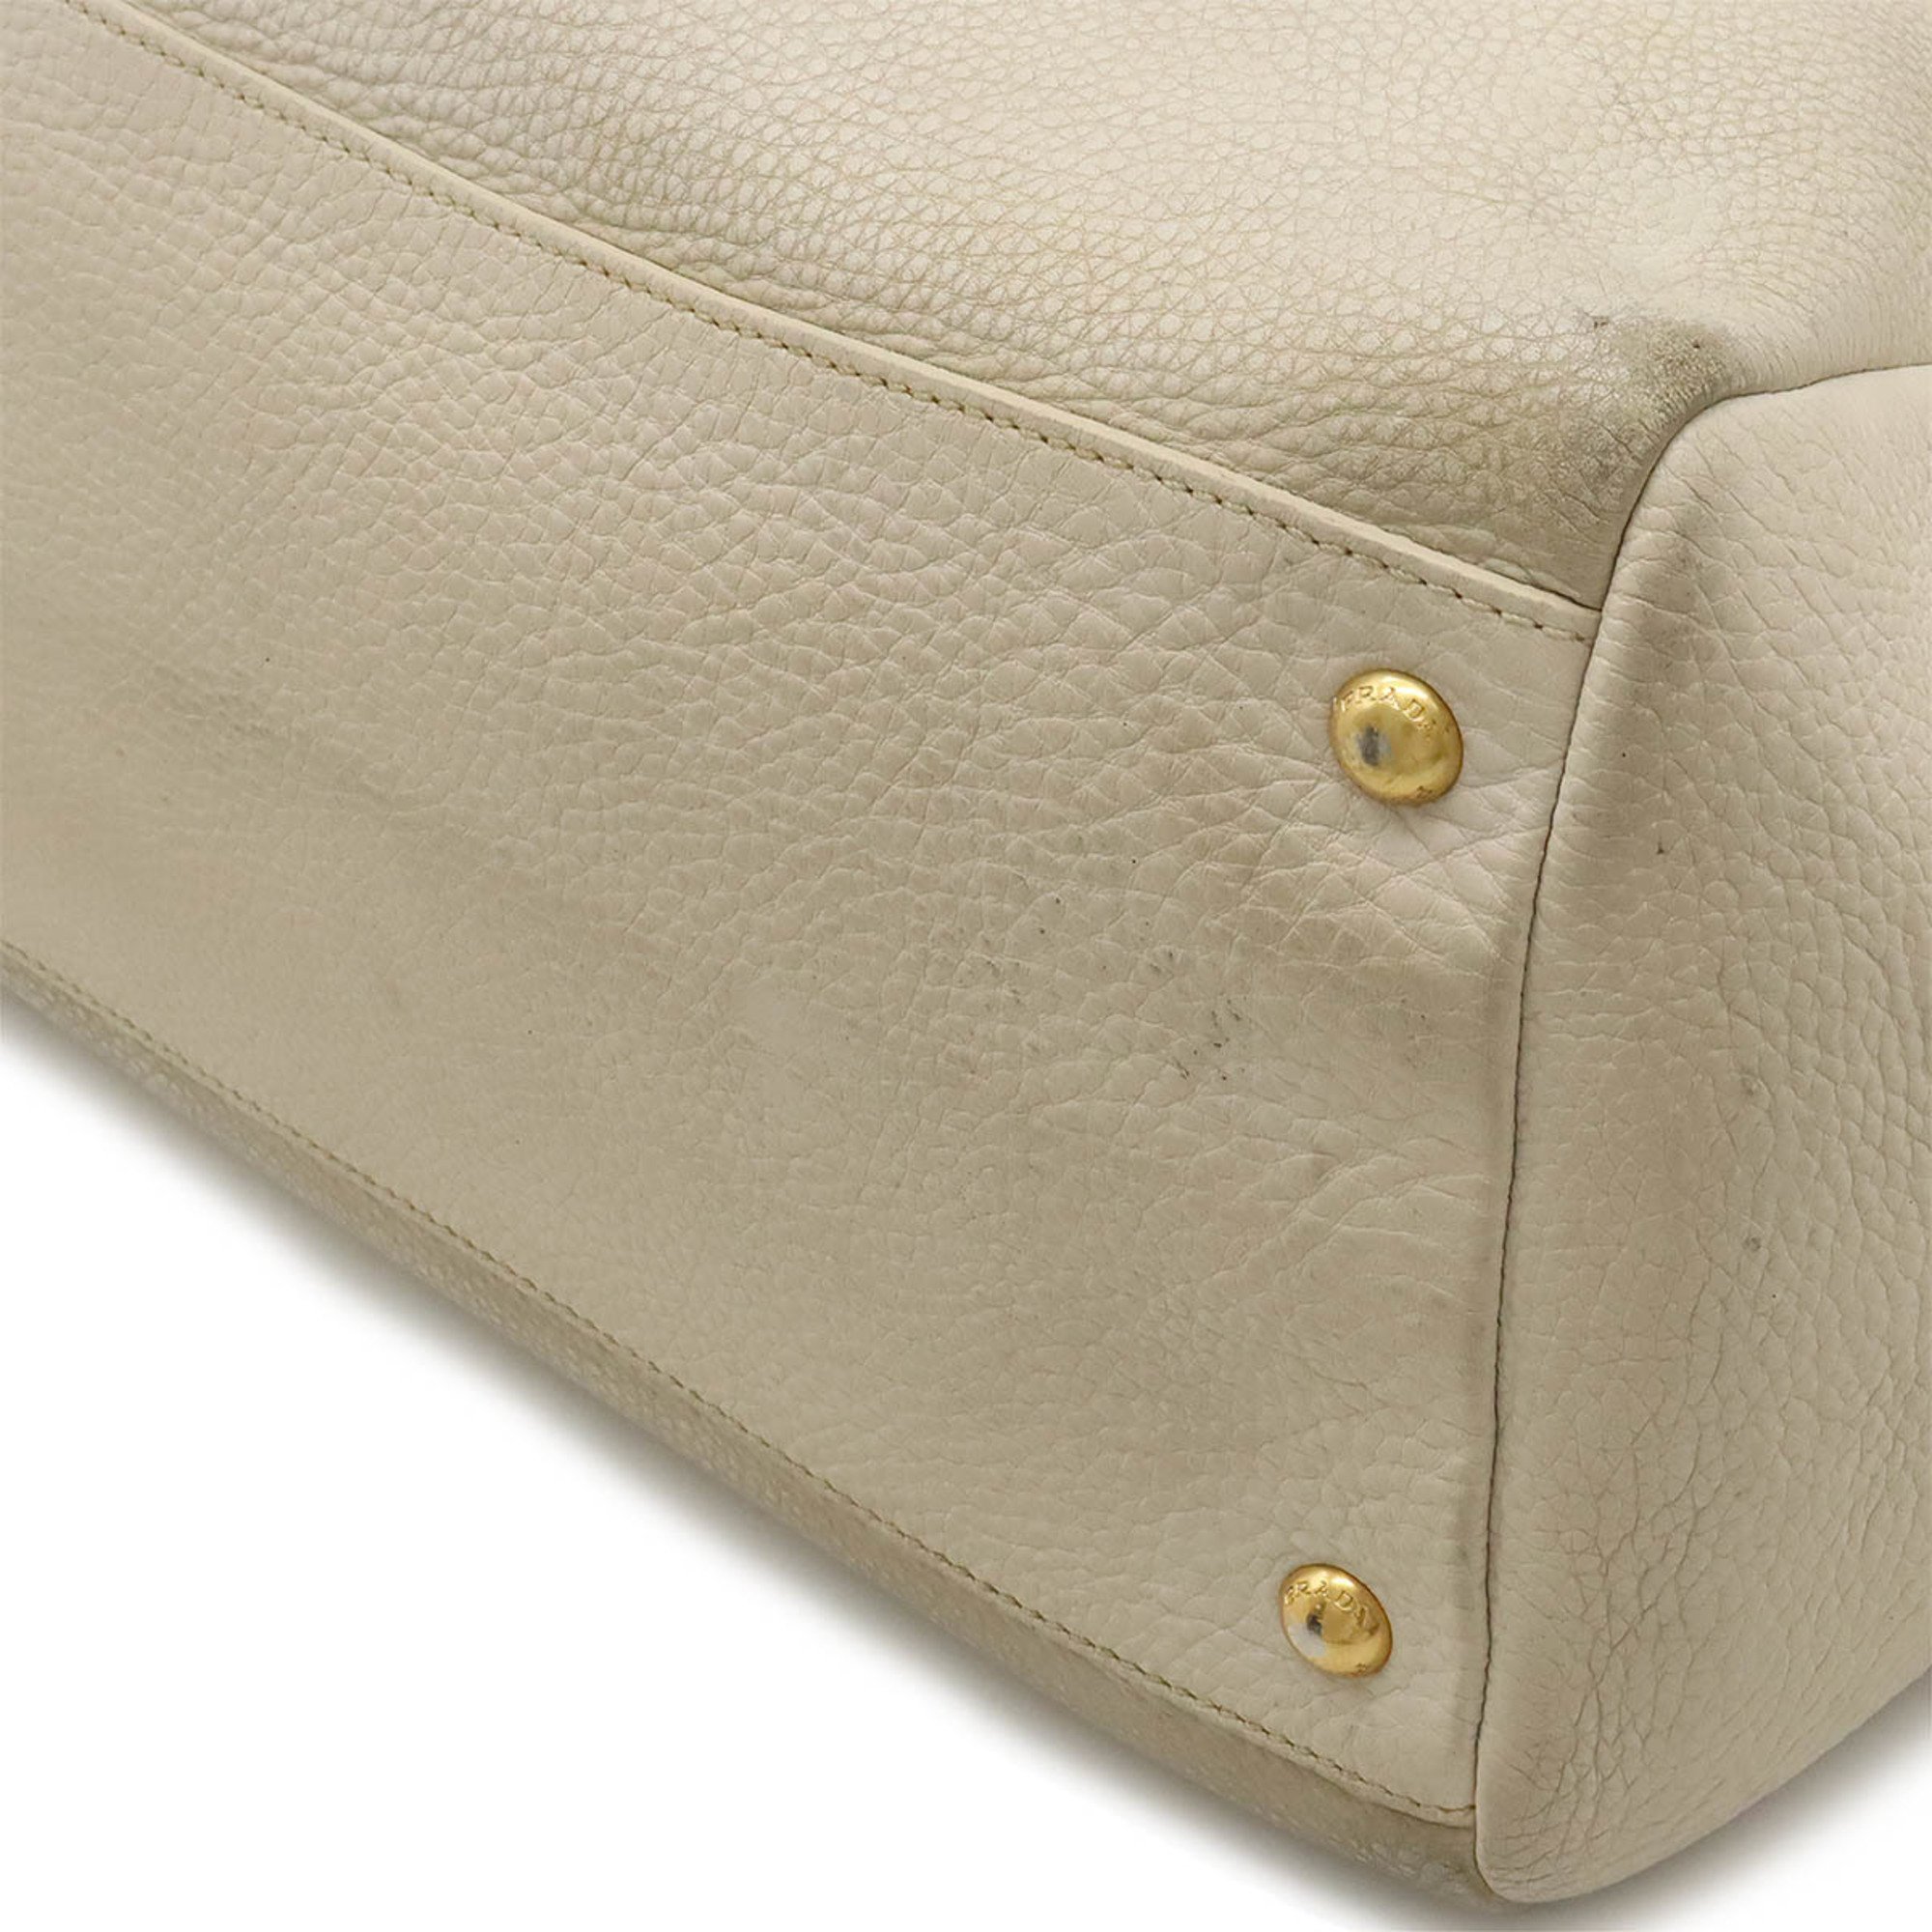 PRADA Prada Tote Bag Large Shoulder Leather Light Beige Purchased at Japan Outlet BN2545